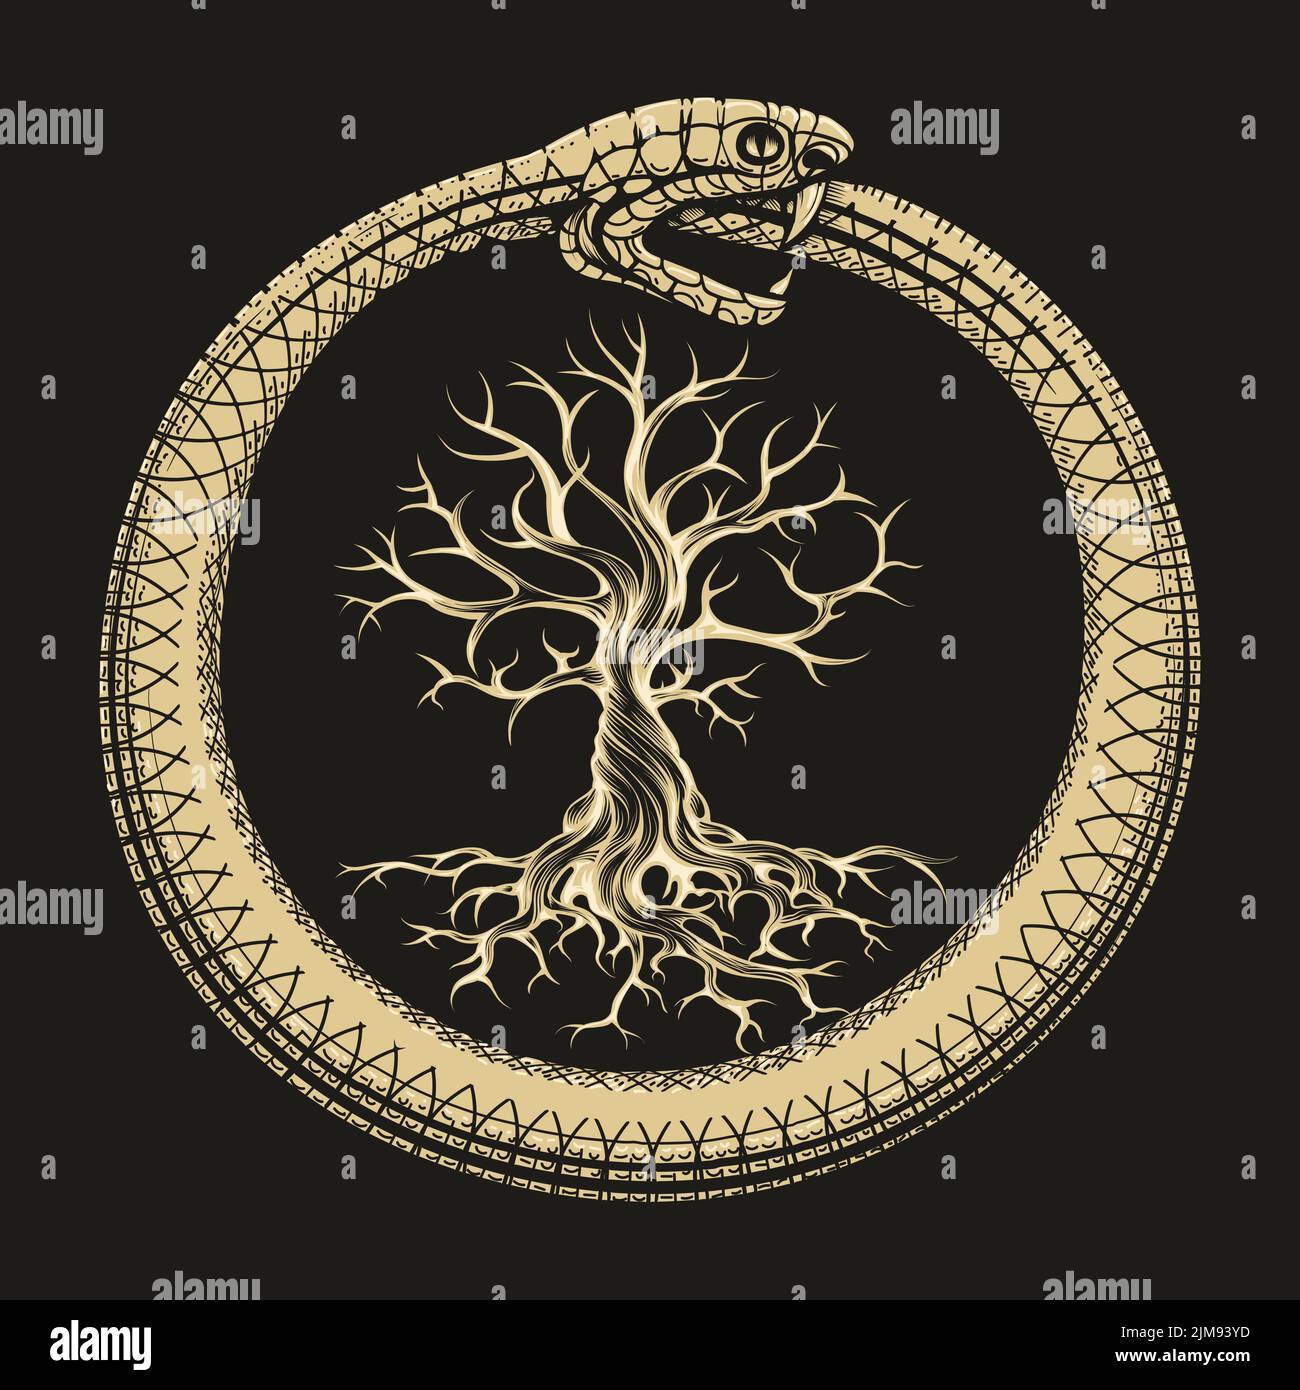 Esoterische Illustration von Ouroboros Schlange und Baum des Lebens isoliert auf Schwarz. Vektorgrafik. Stock Vektor